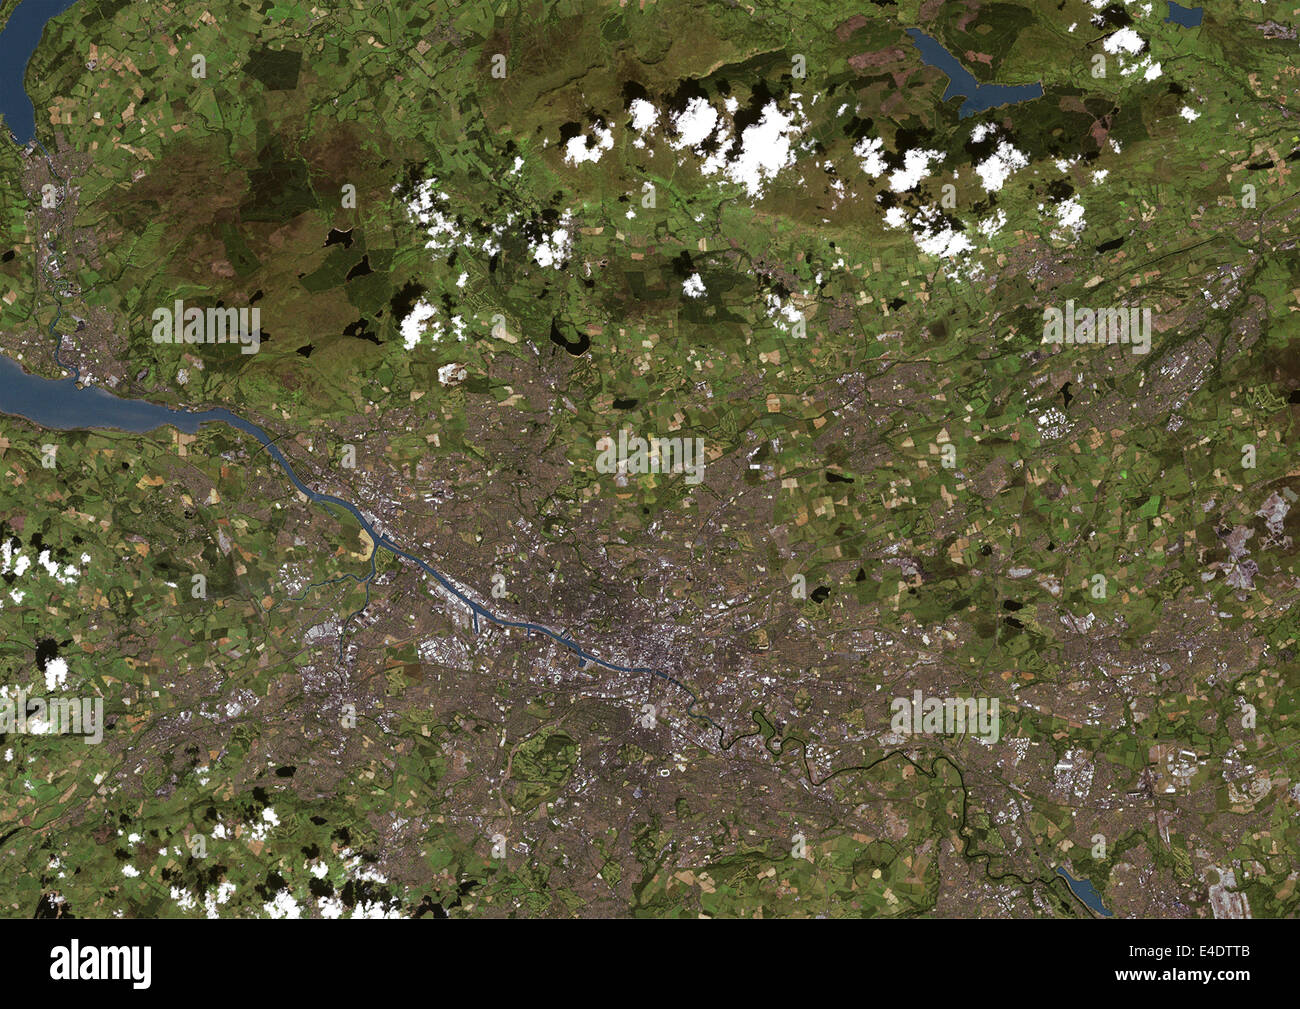 Glasgow, Schottland, Vereinigtes Königreich, Echtfarben-Satellitenbild. Glasgow, Schottland. Echtfarben-Satellitenbild der Stadt Glasgow, t Stockfoto